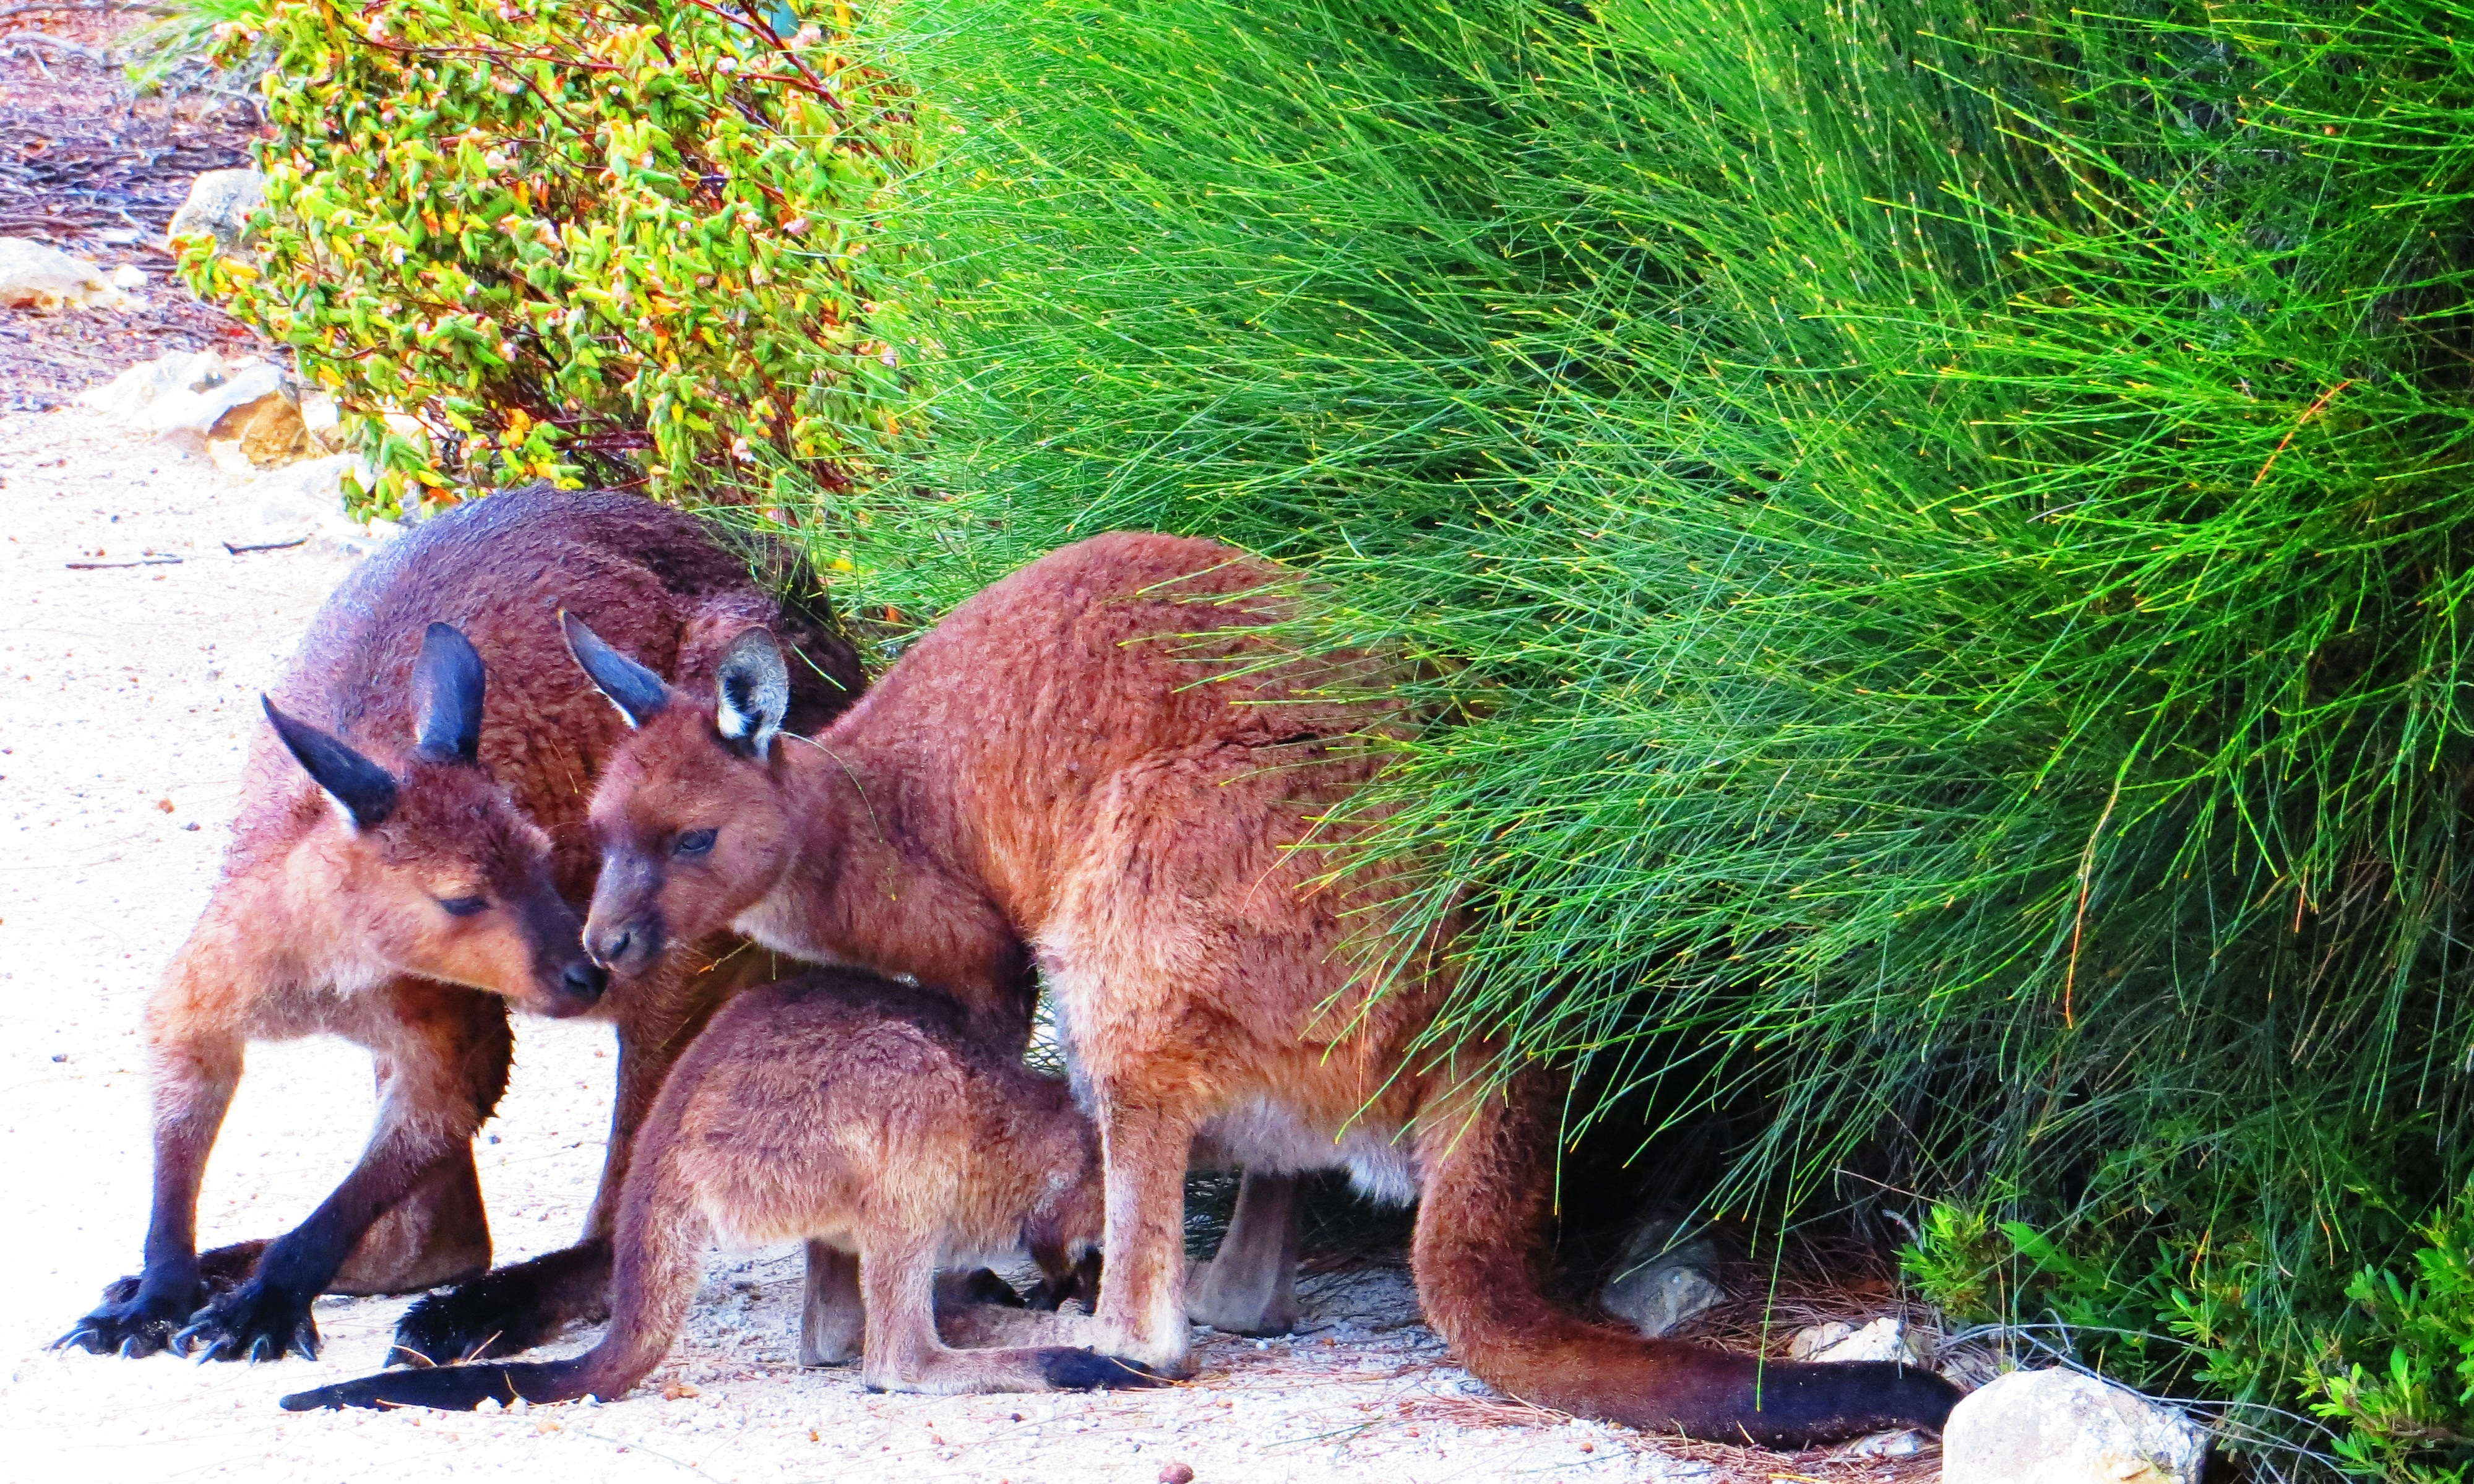 Family of Kangaroo Island kangaroos (Macropus fuliginosus fuliginosus) in springtime. Photo taken at Flinders Chase National Park, Kangaroo Island, South Australia on November 7, 2013.